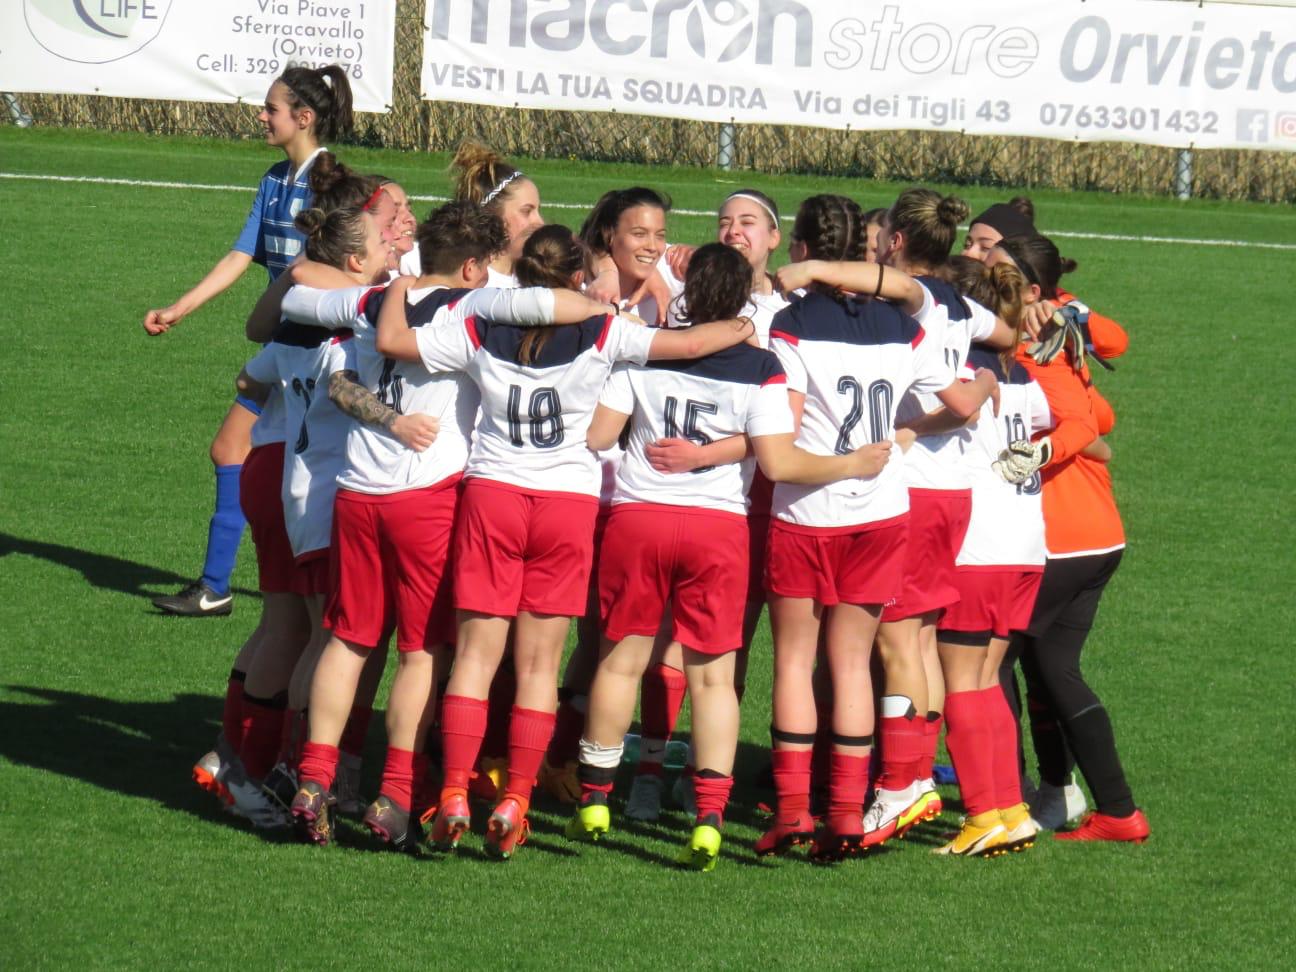 Le ragazze dell’Orvieto FC Campionesse regionali nel campionato di Eccellenza umbro